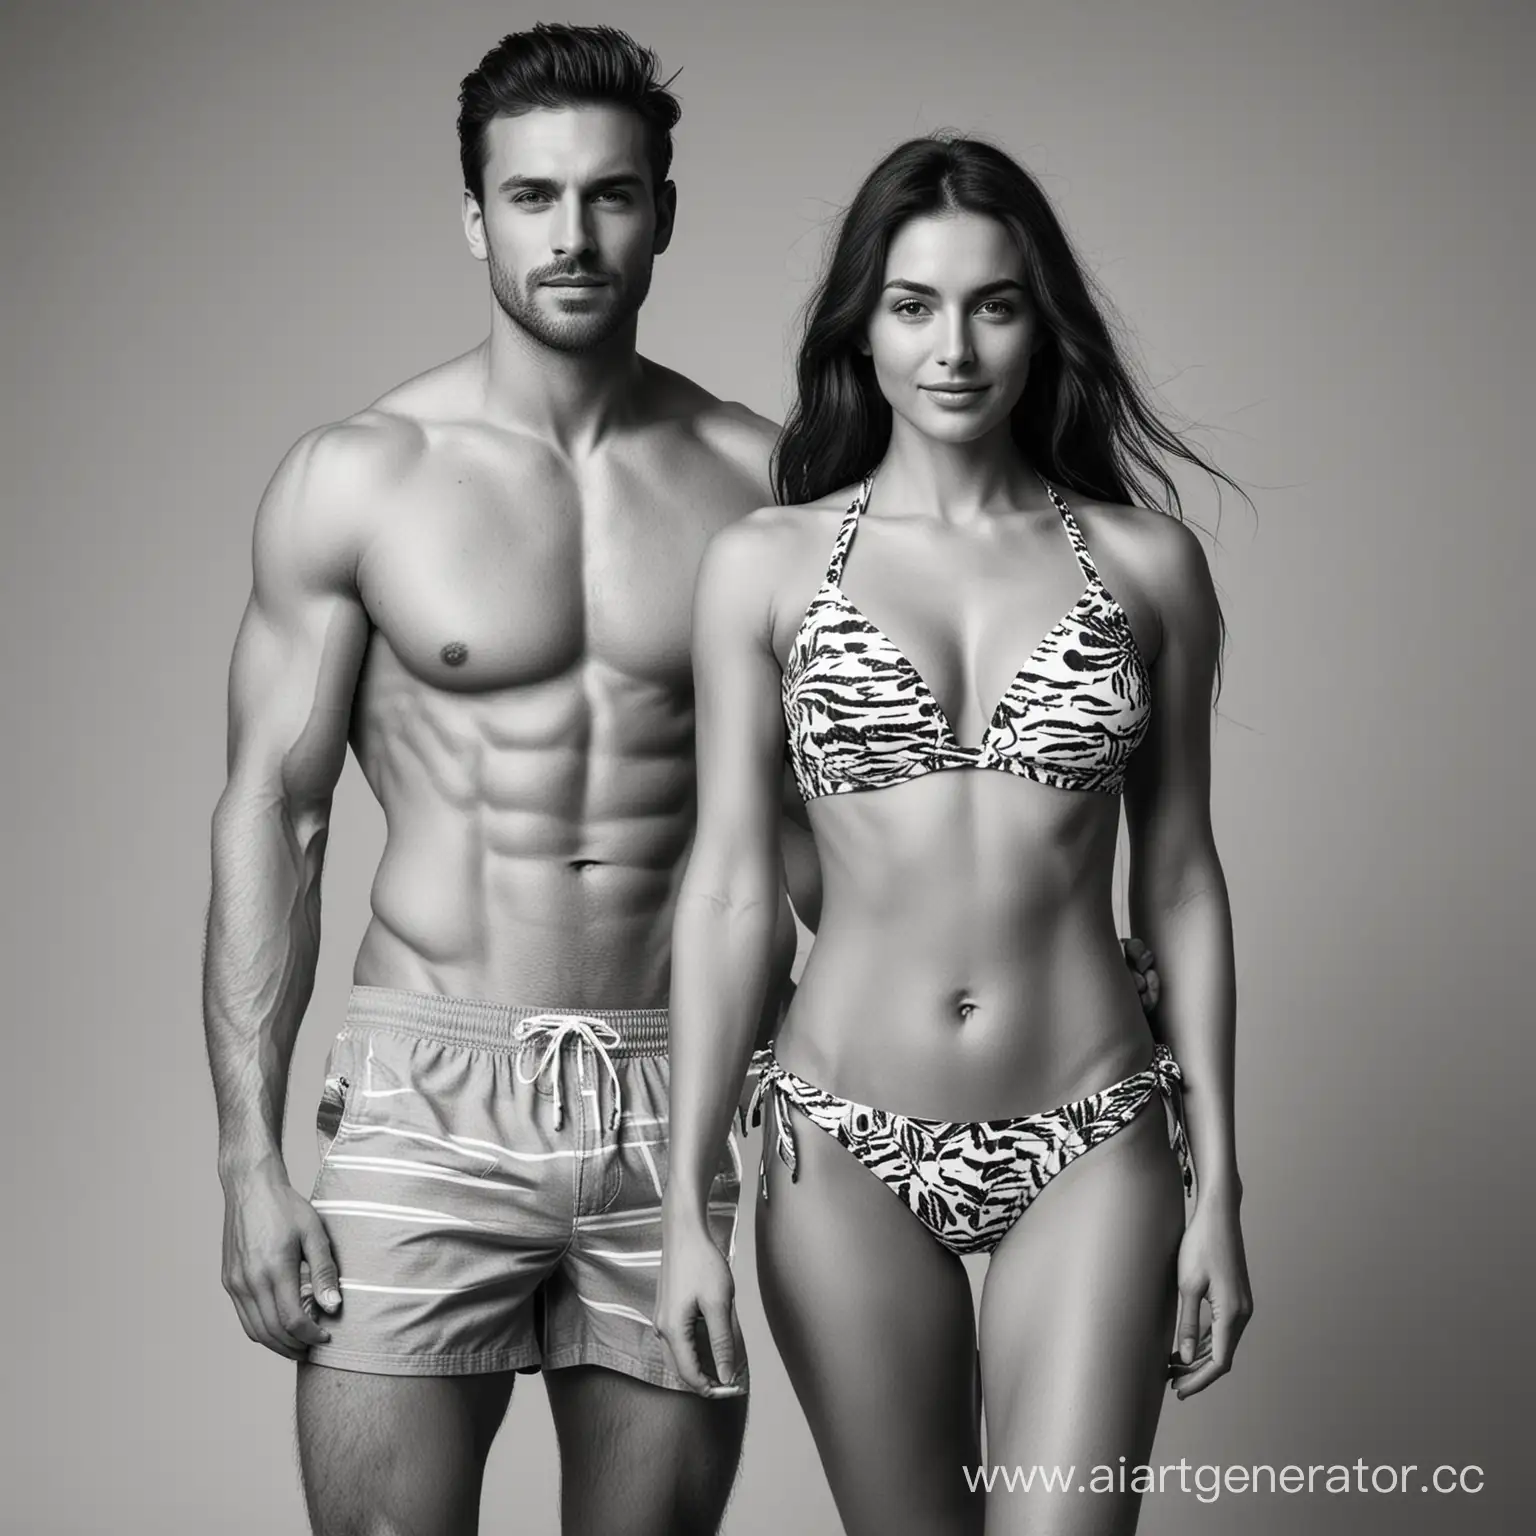 мужчина и женщина с подтянутыми телами в пляжной стилистике, передающей свежесть и легкость, в пляжной одежде, на сером однотонном фоне